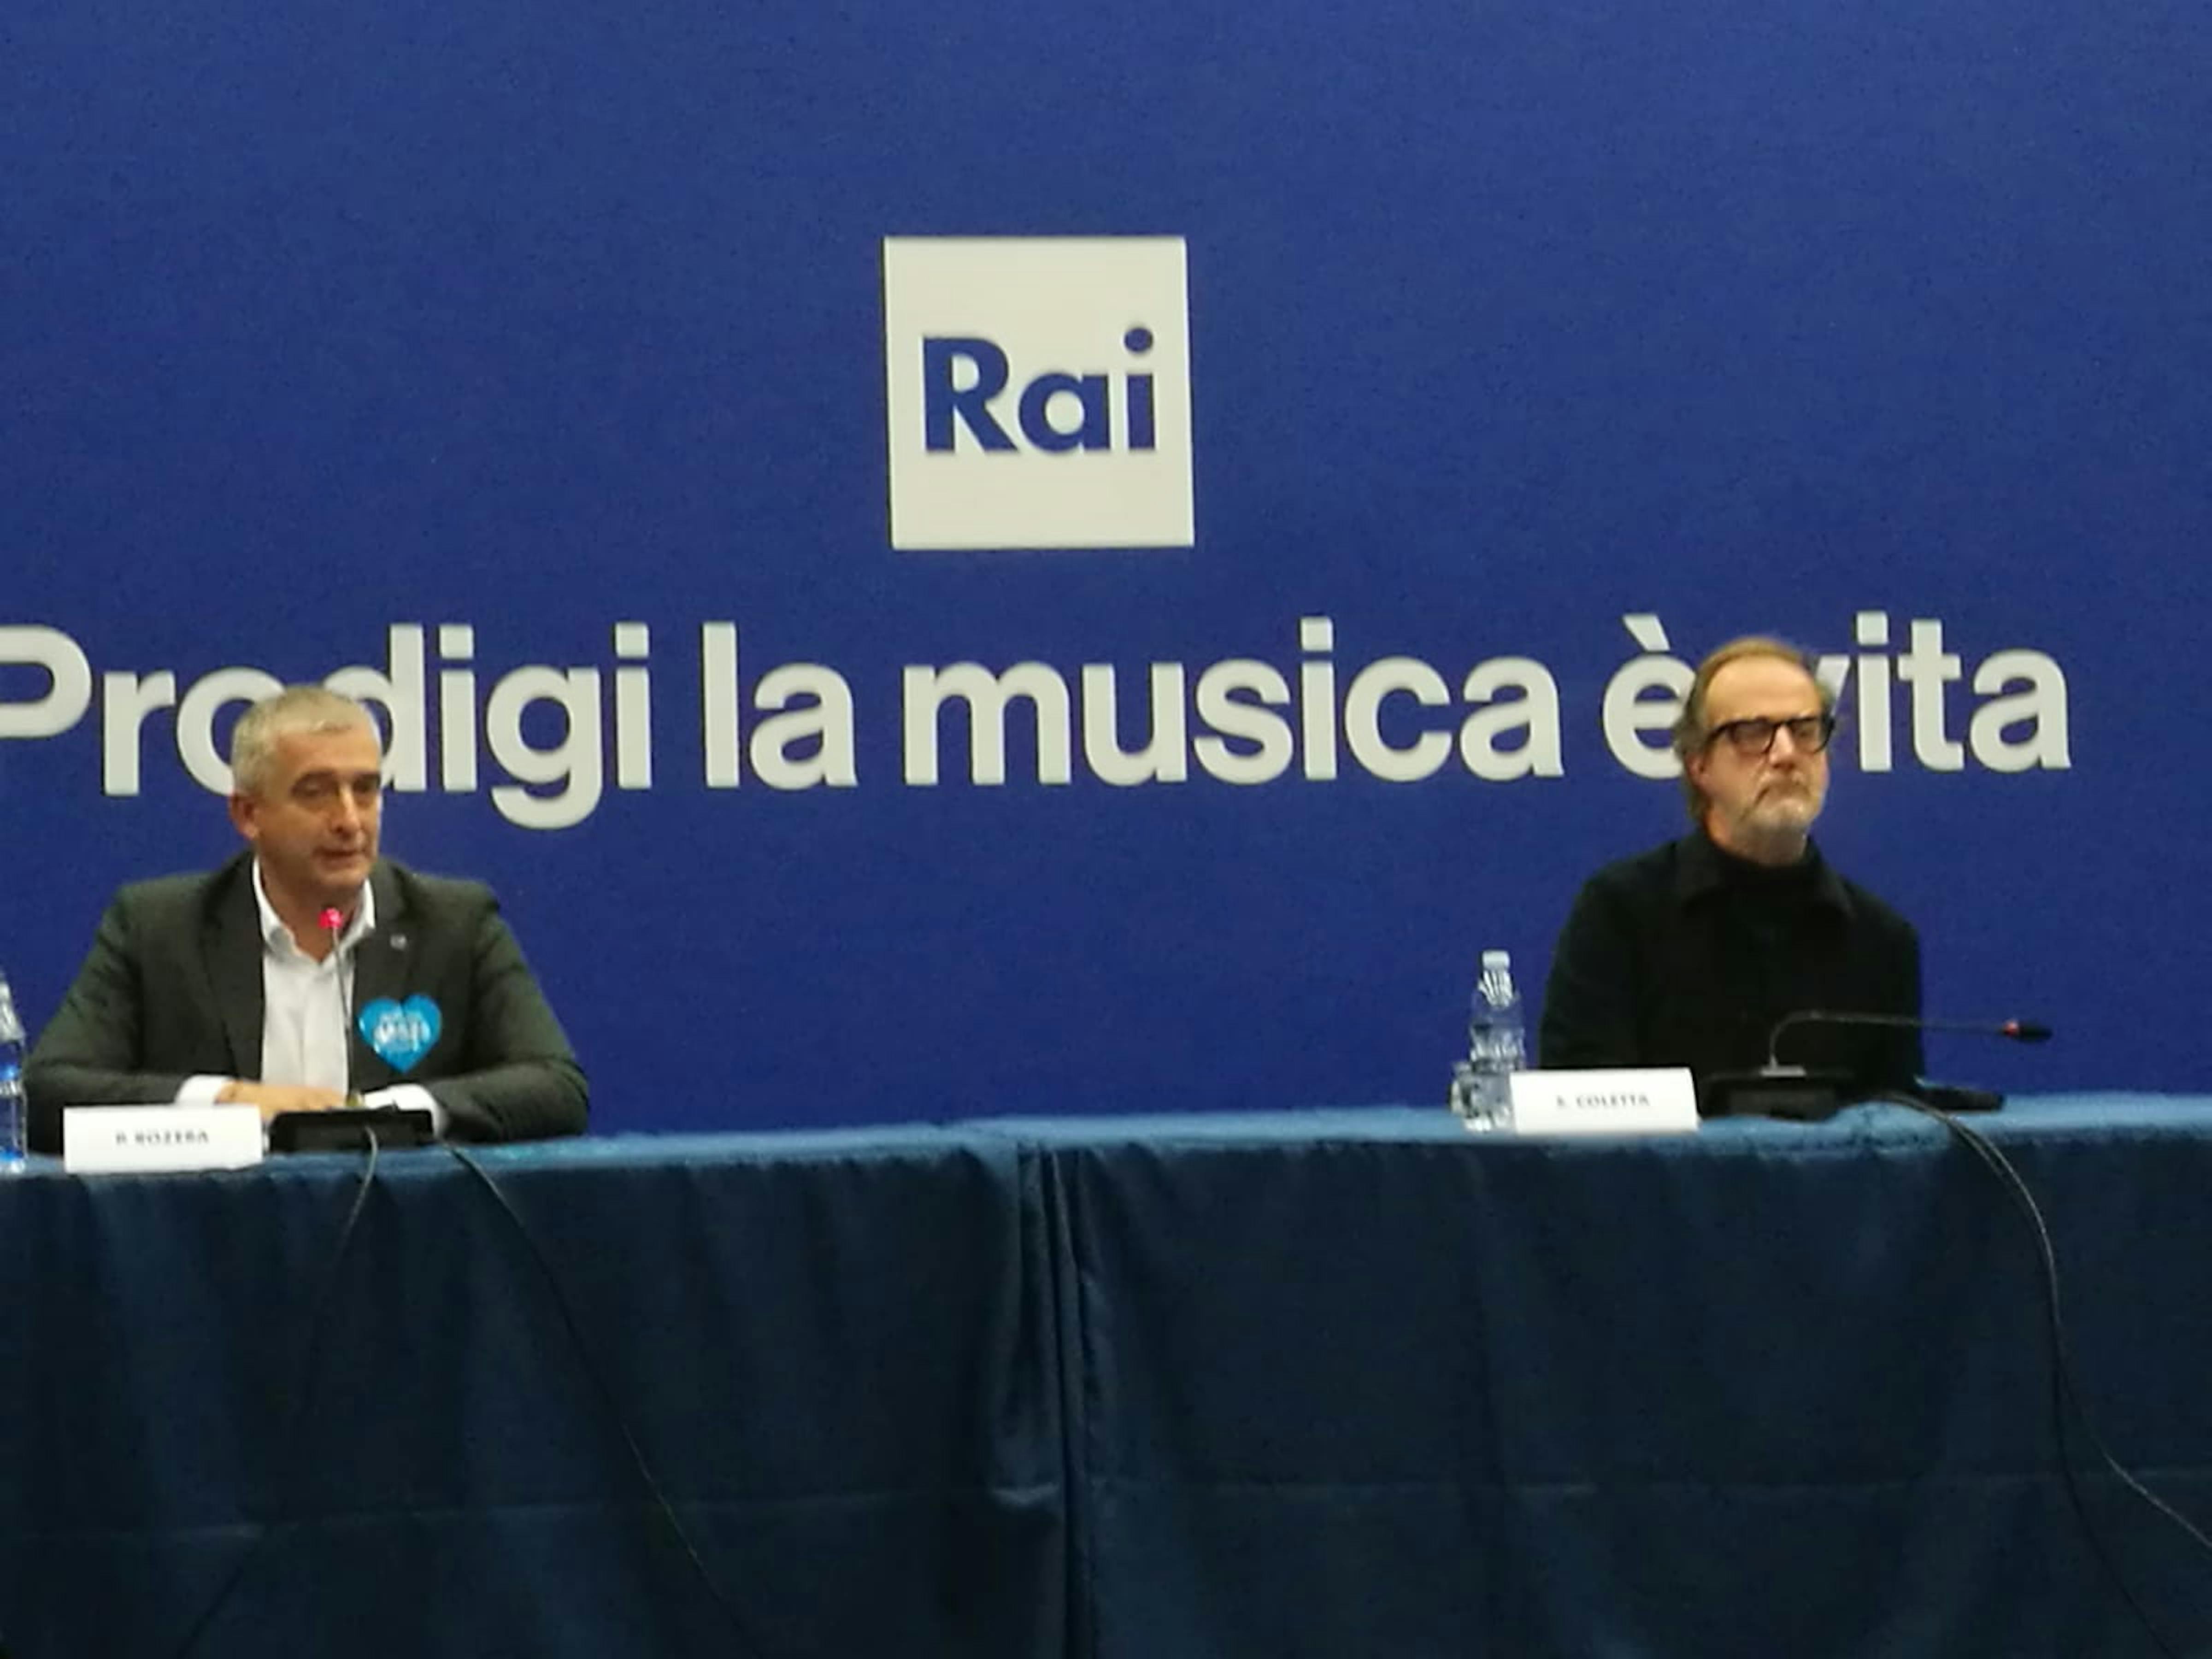 Paolo Rozera, Direttore generale UNICEF Italia e Stefano Coletta, Direttore Rai1 durante la conferenza stampa di presentazione di Prodigi